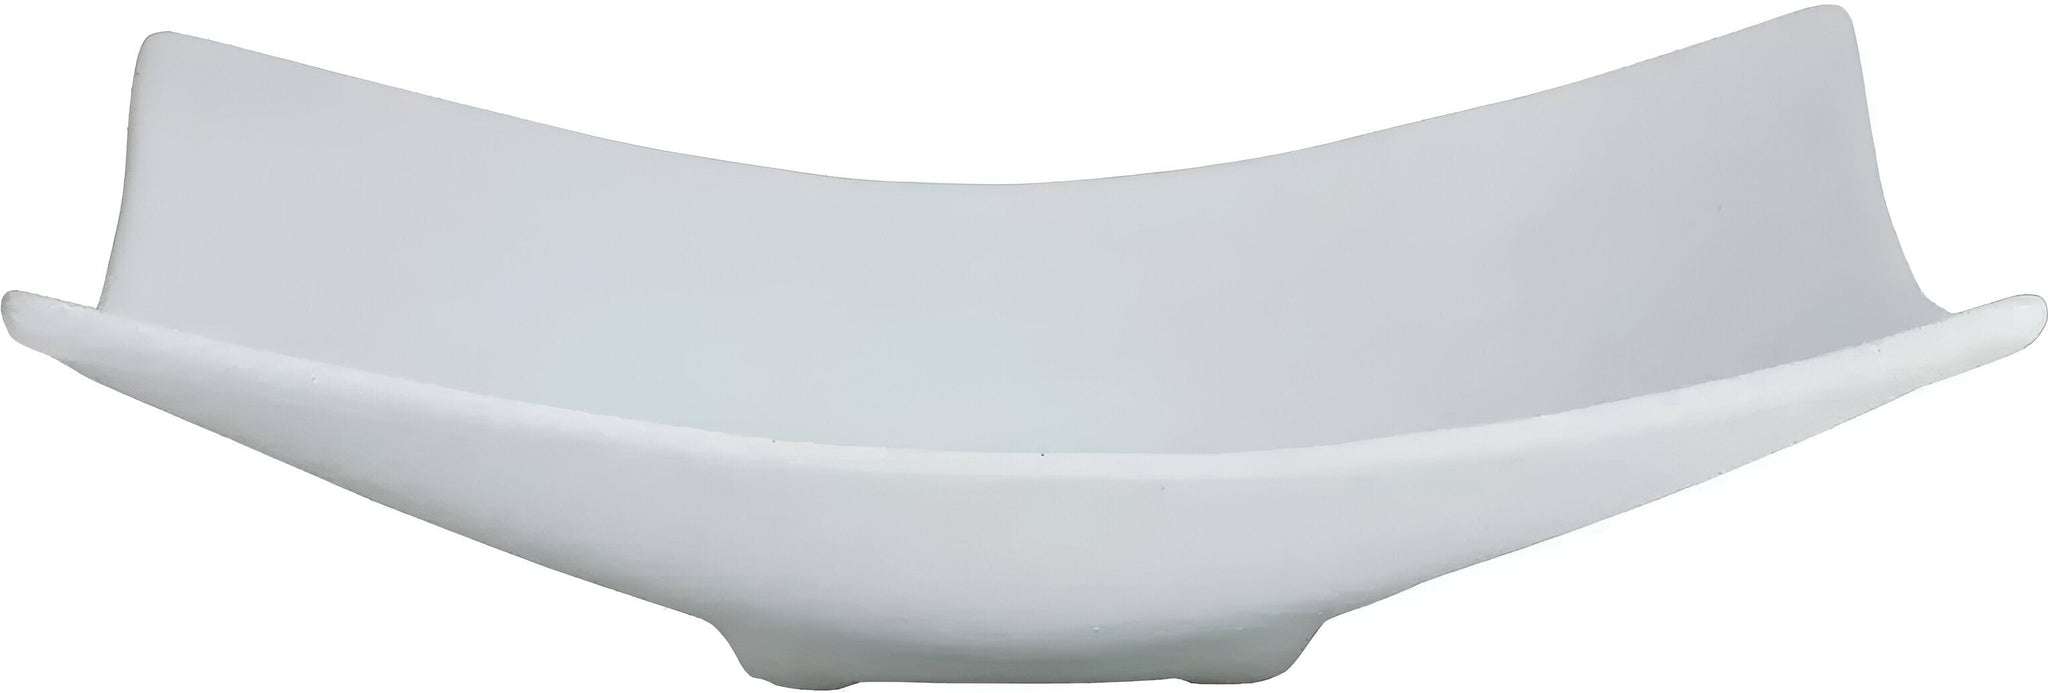 Bugambilia - Classic 108.8 Oz X-Large Rectangular White Fruit Bowl With Elegantly Textured - FU005WW